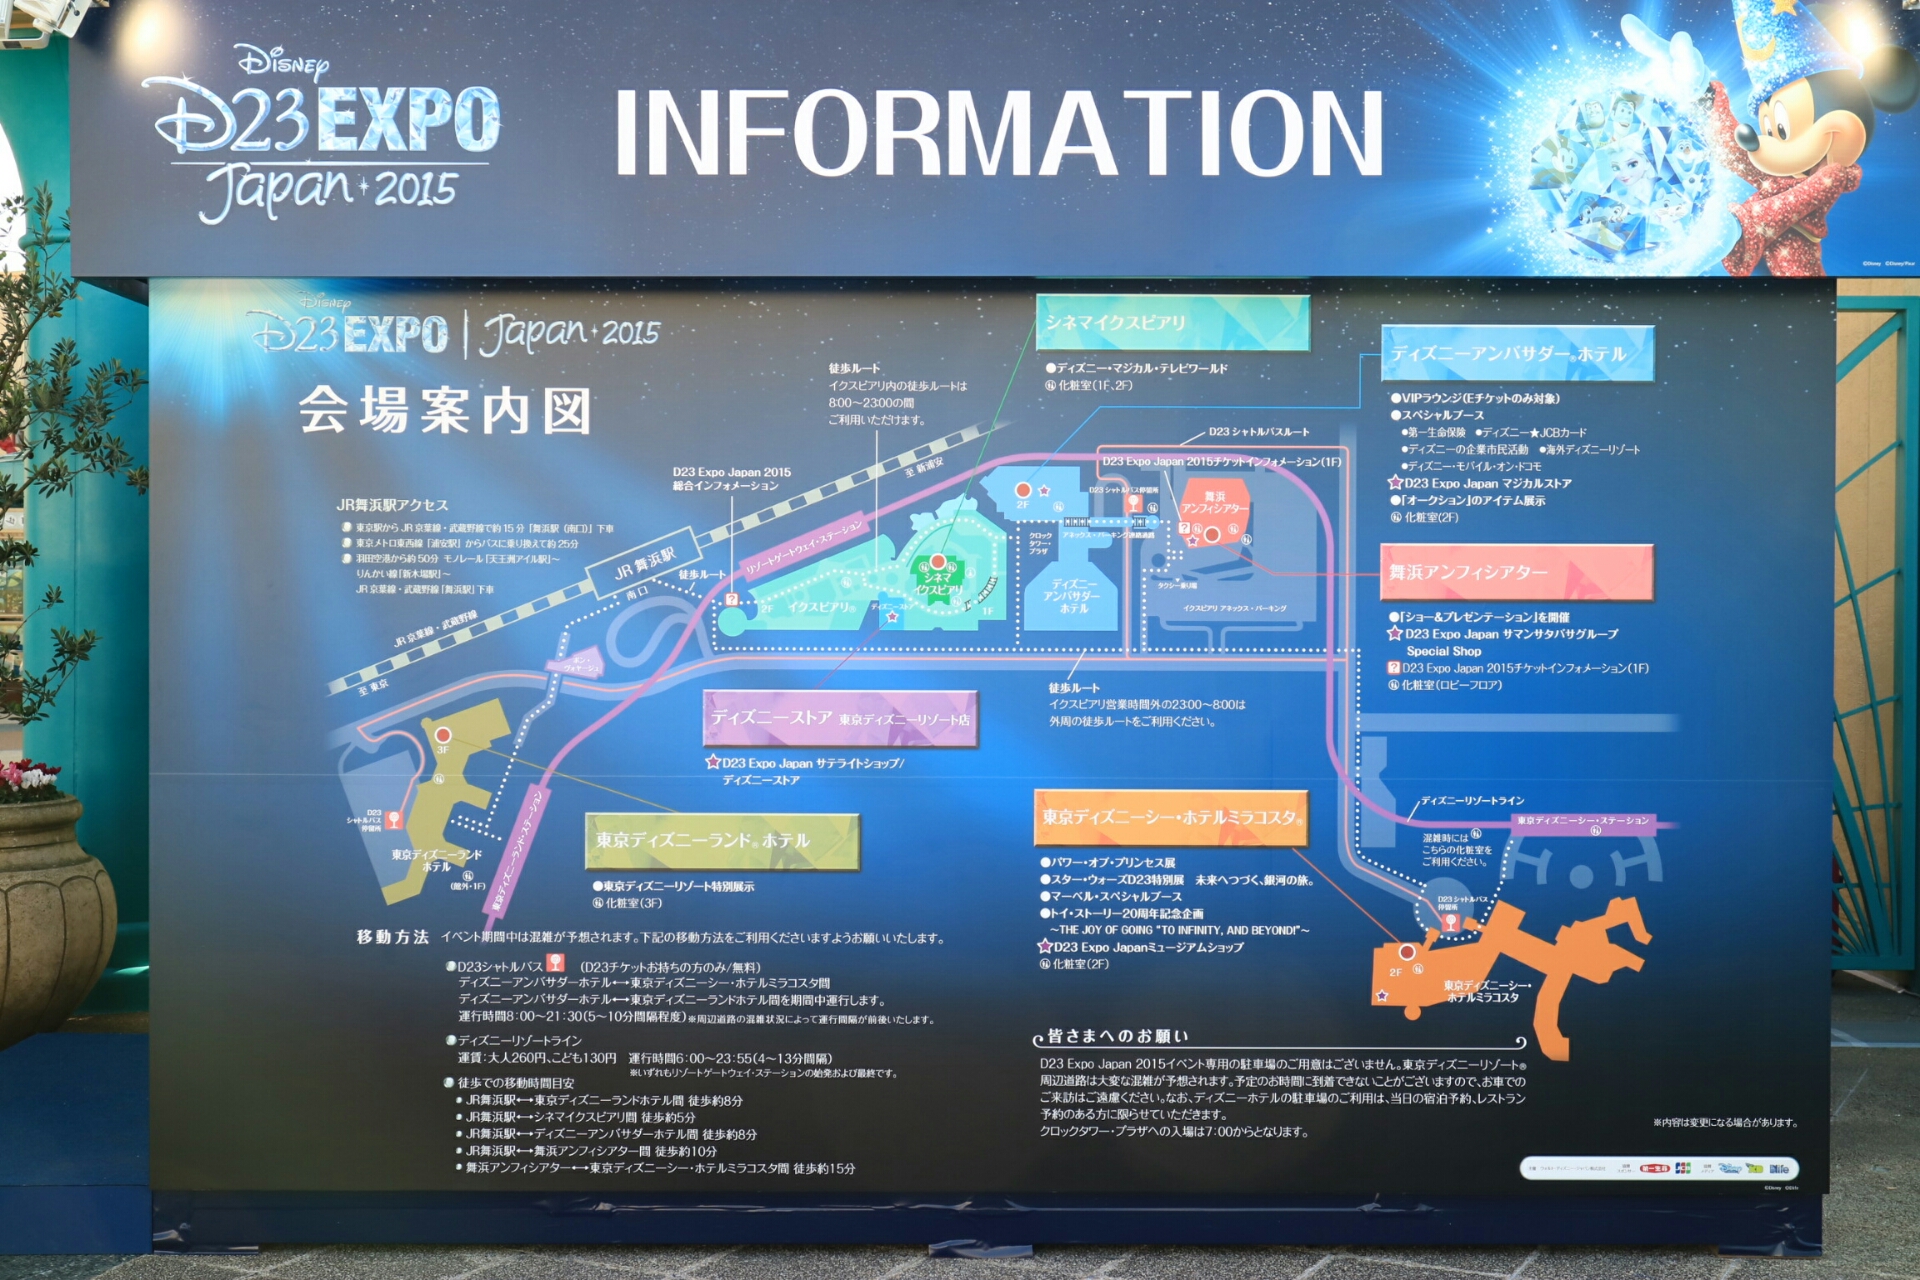 ディズニー D23 EXPO Japan 2015 開催！限定グッズと14時現在の待ち時間は？ | め〜んずスタジオ